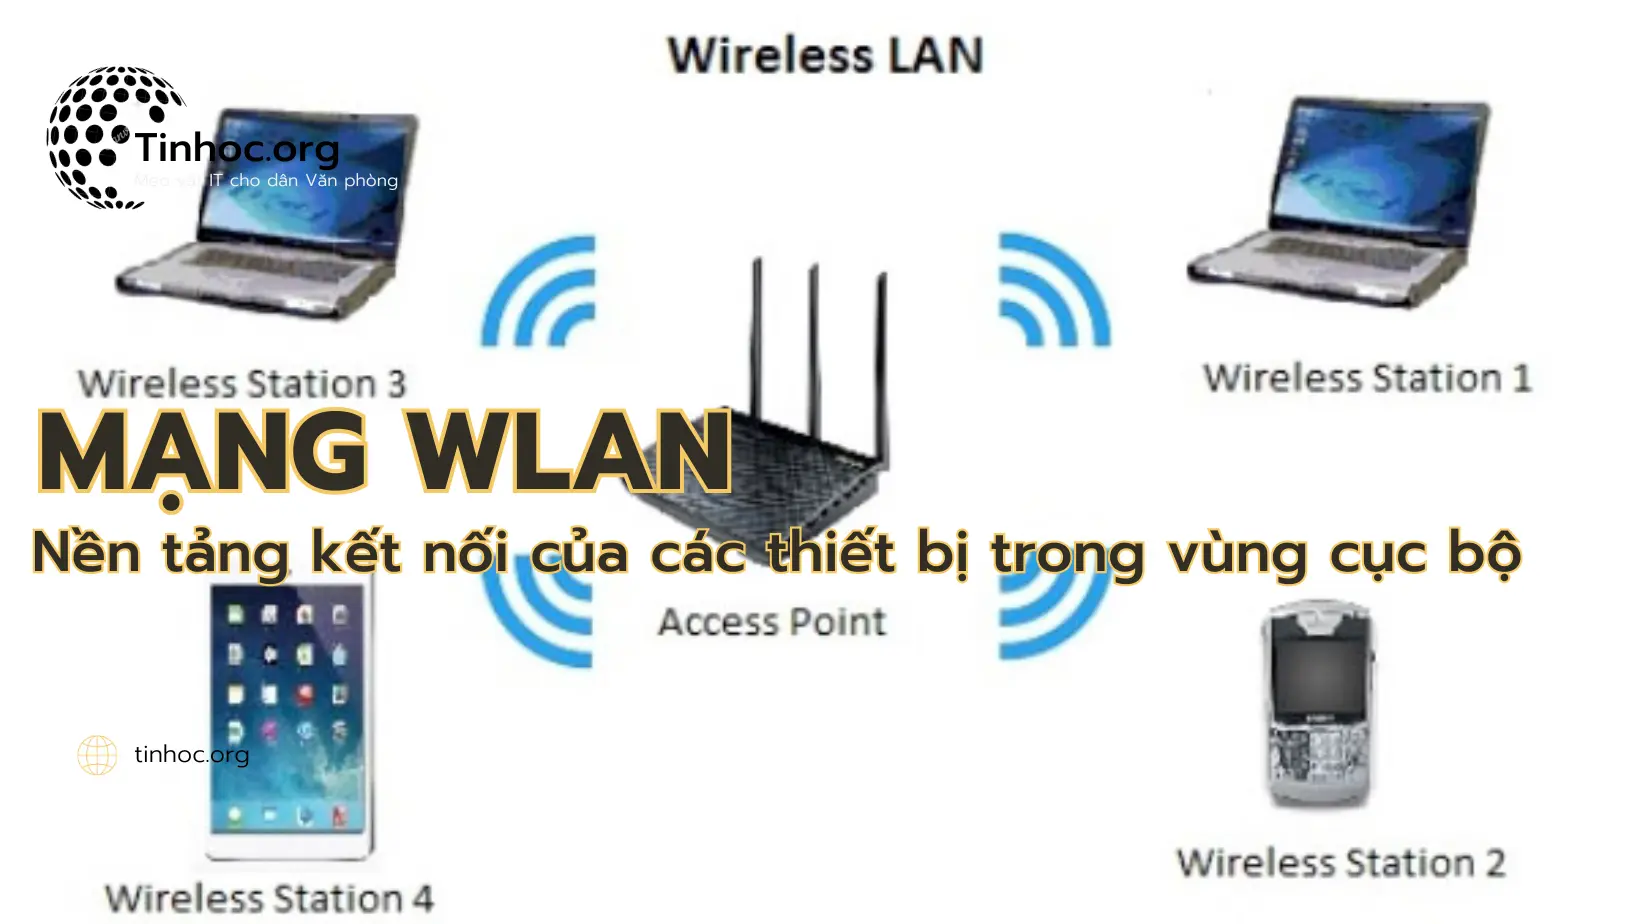 Mạng WLAN: Nền tảng kết nối của các thiết bị cục bộ